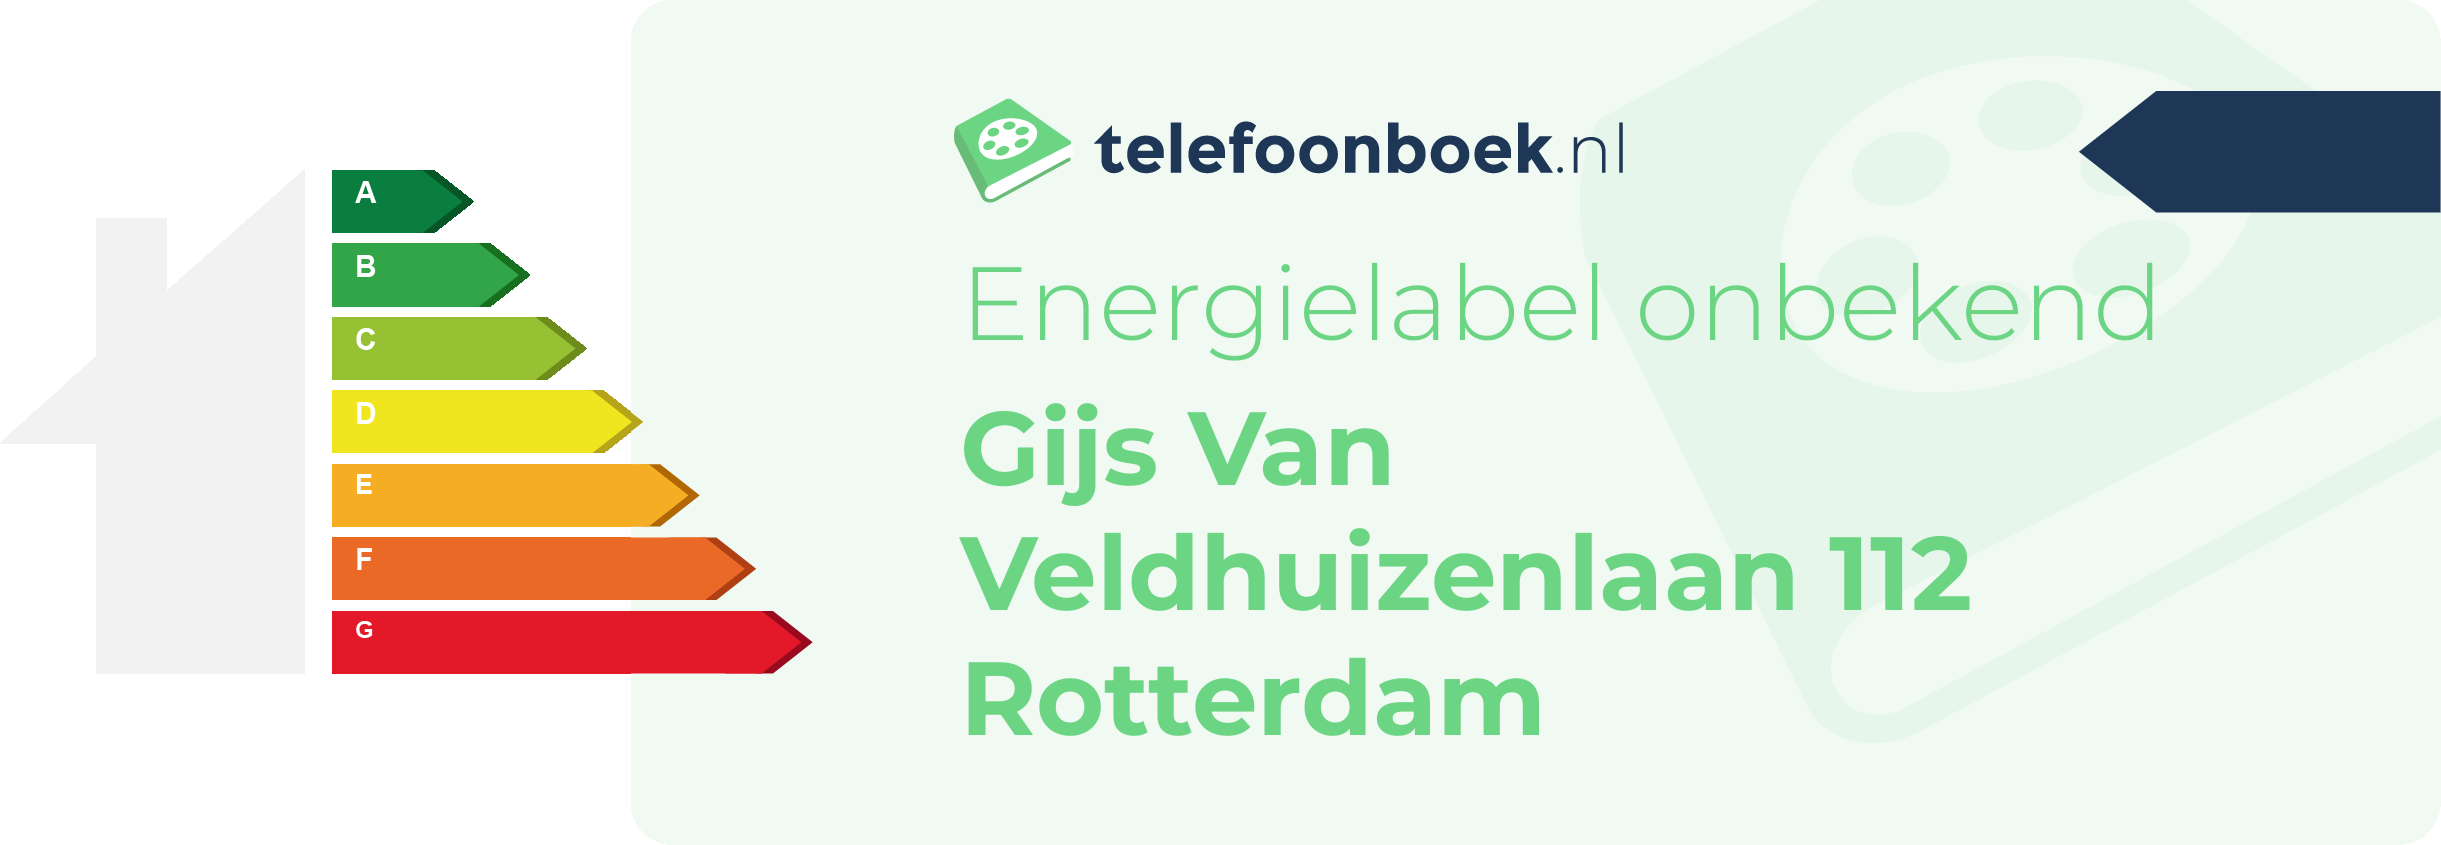 Energielabel Gijs Van Veldhuizenlaan 112 Rotterdam